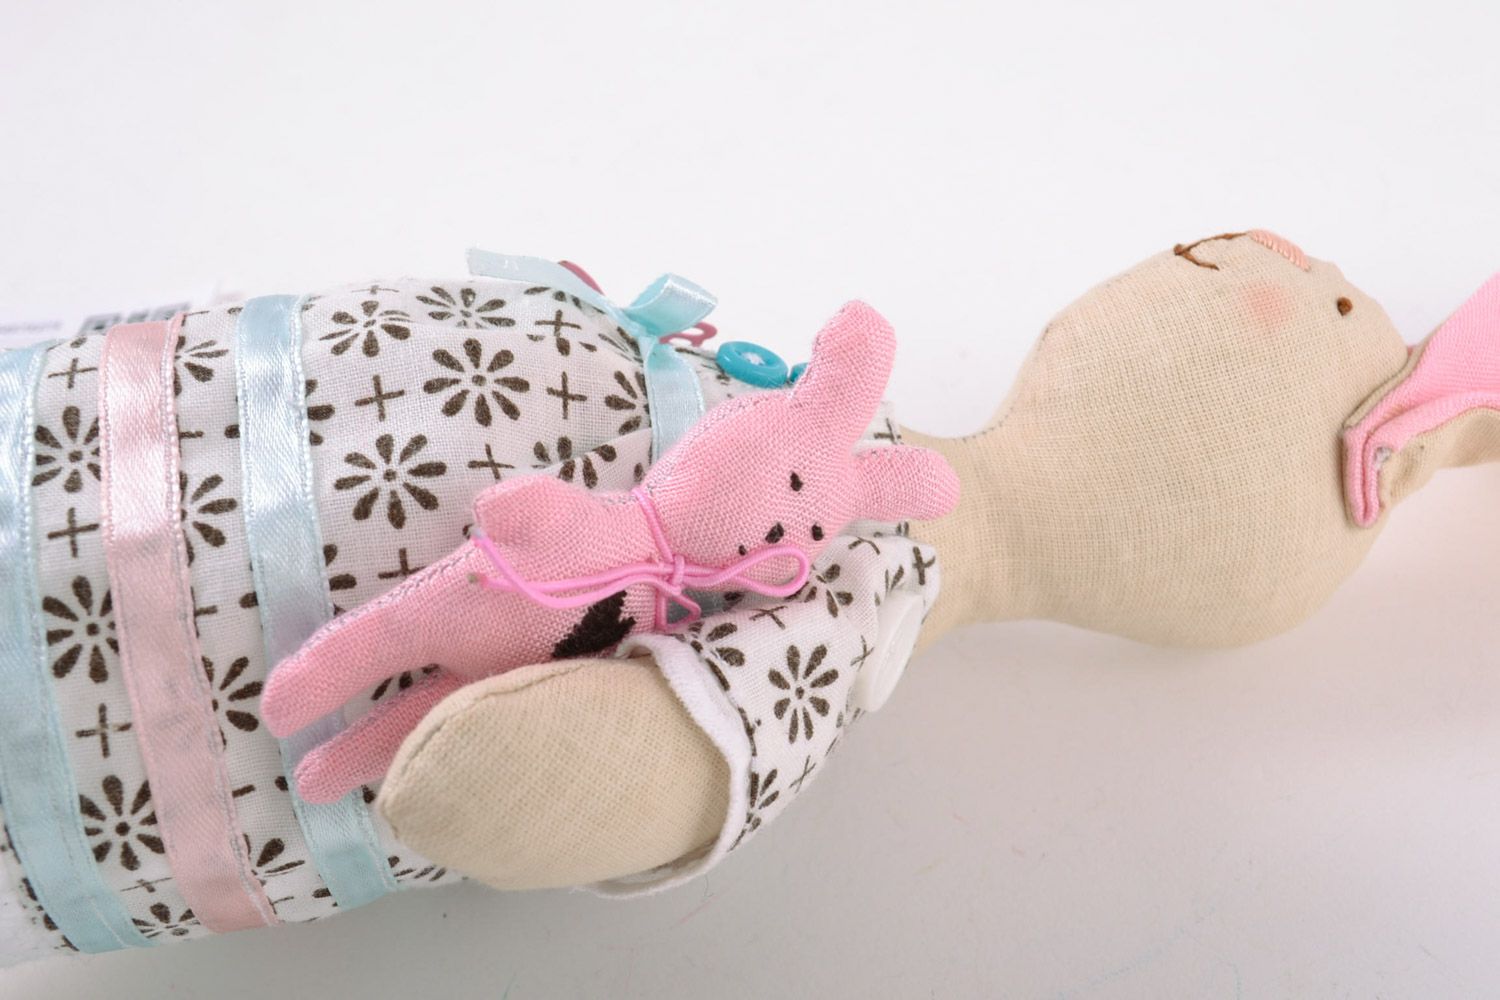 Textil Kuscheltier Hase rosa im Kleid aus Baumwolle schön für Mädchen handmade foto 3